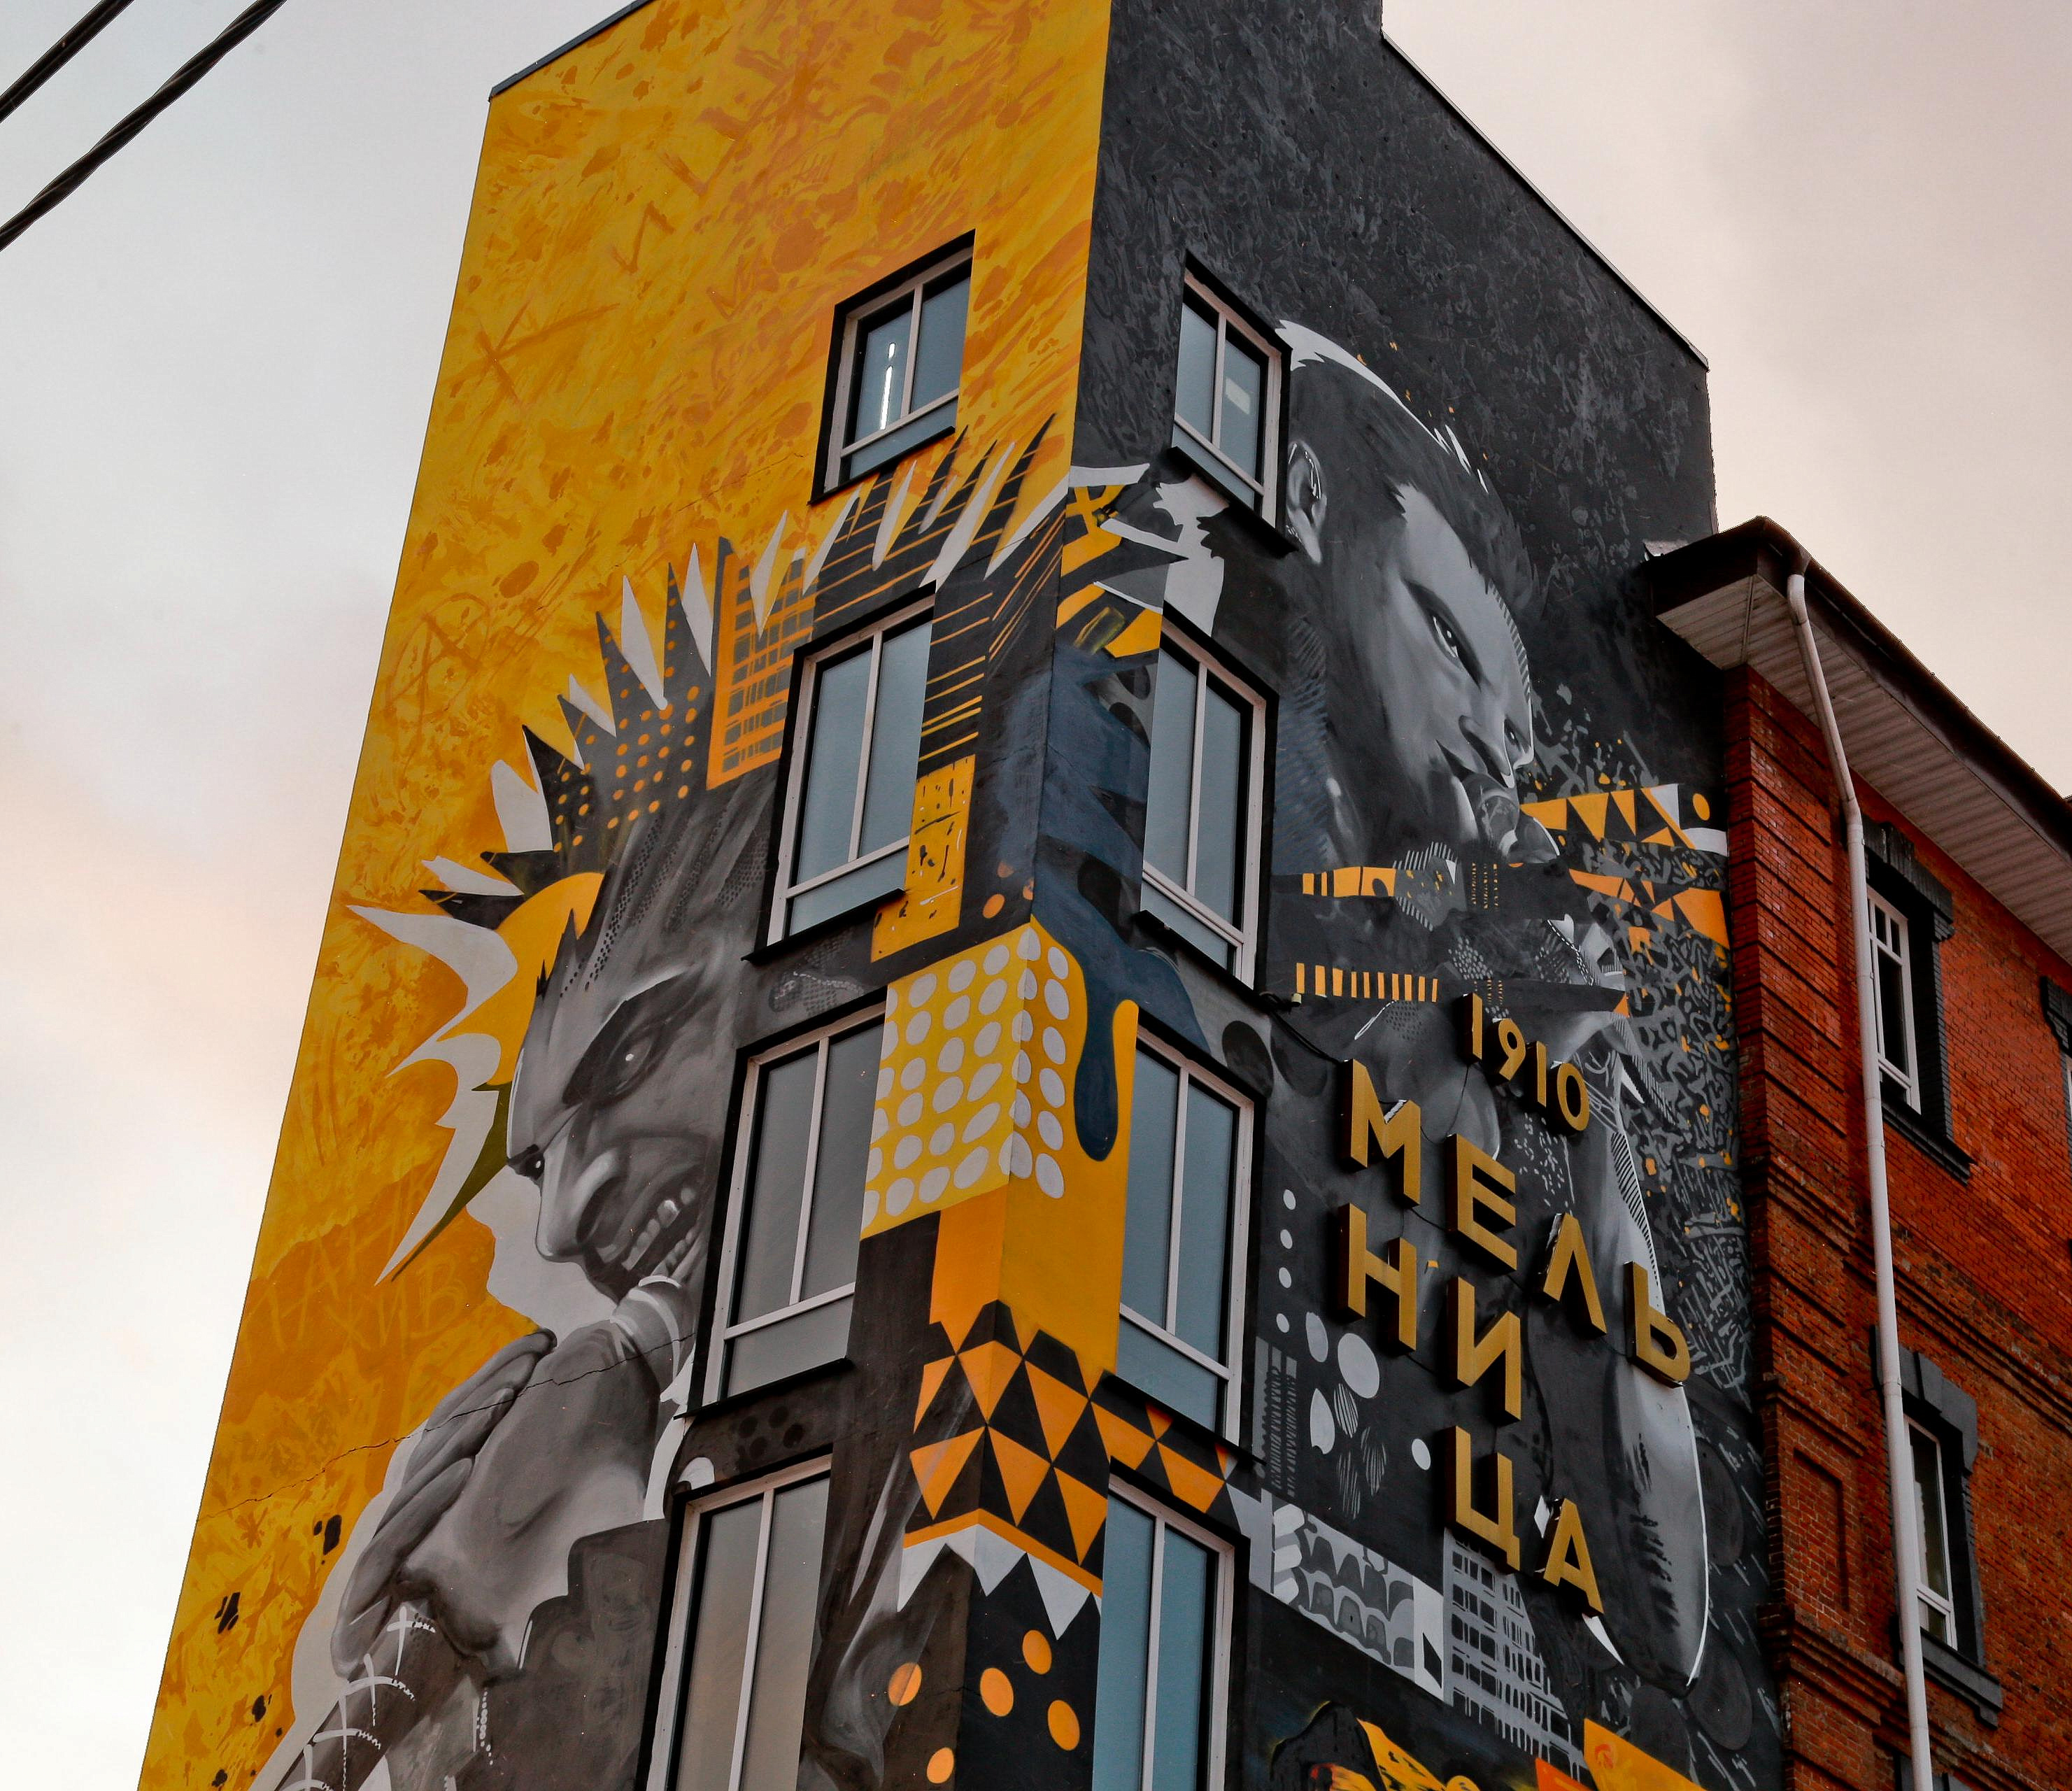 32-метровое изображение «Короля и Шута» украсило стену в Новосибирске